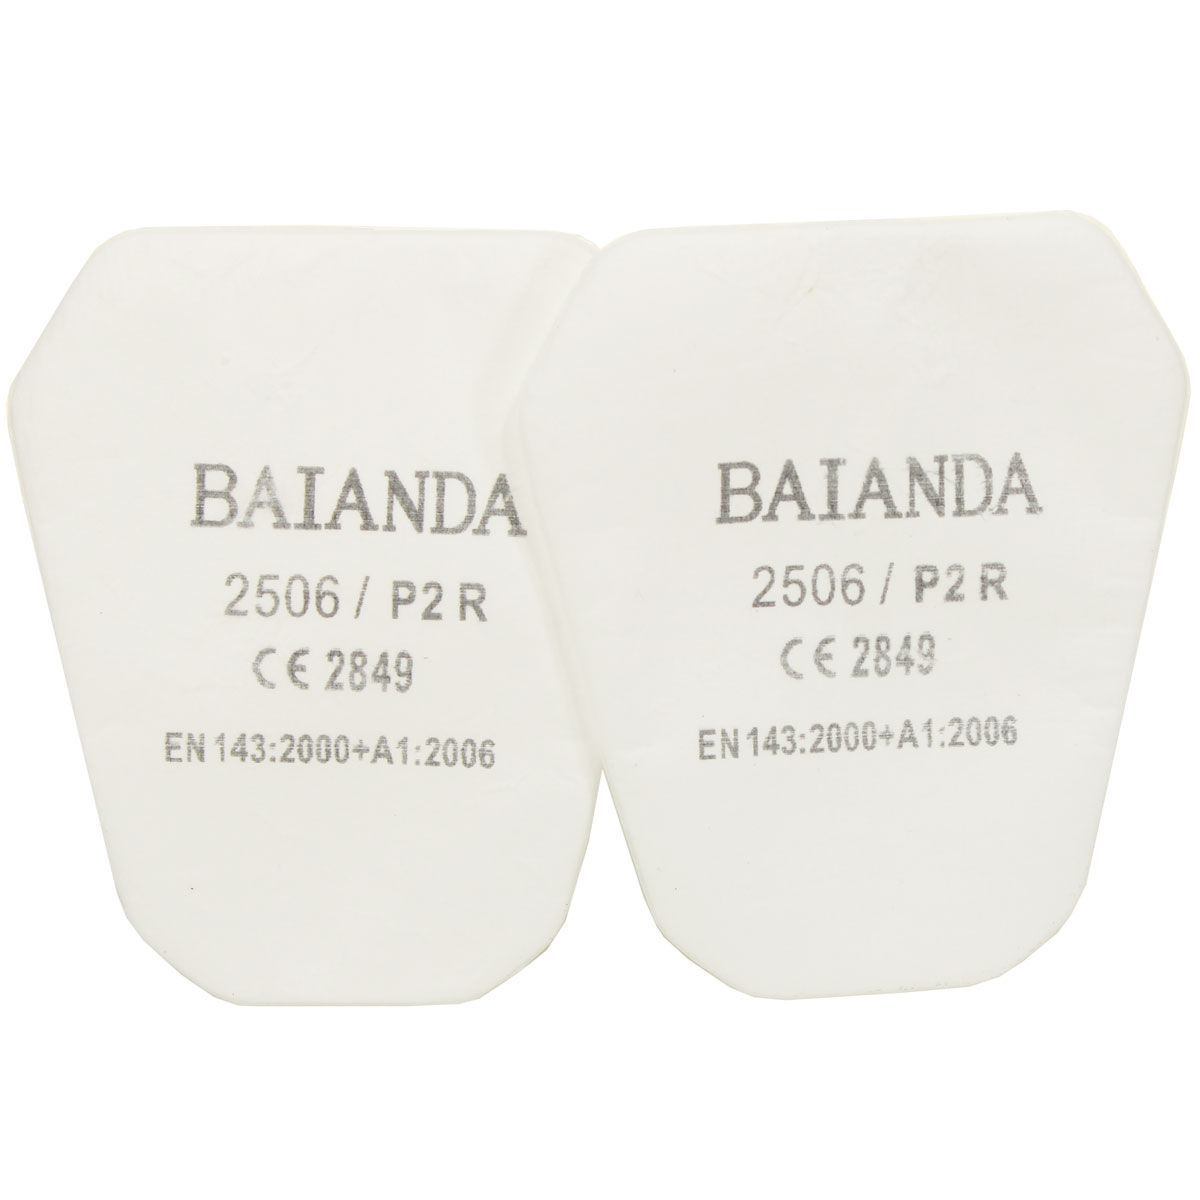 держатели fez01 для противоаэрозольных предфильтров baianda 2506 и 2509 2 шт уп Комплект противоаэрозольных фильтров (предфильтров) BAIANDA 2506, класс P2R, 10 шт/уп